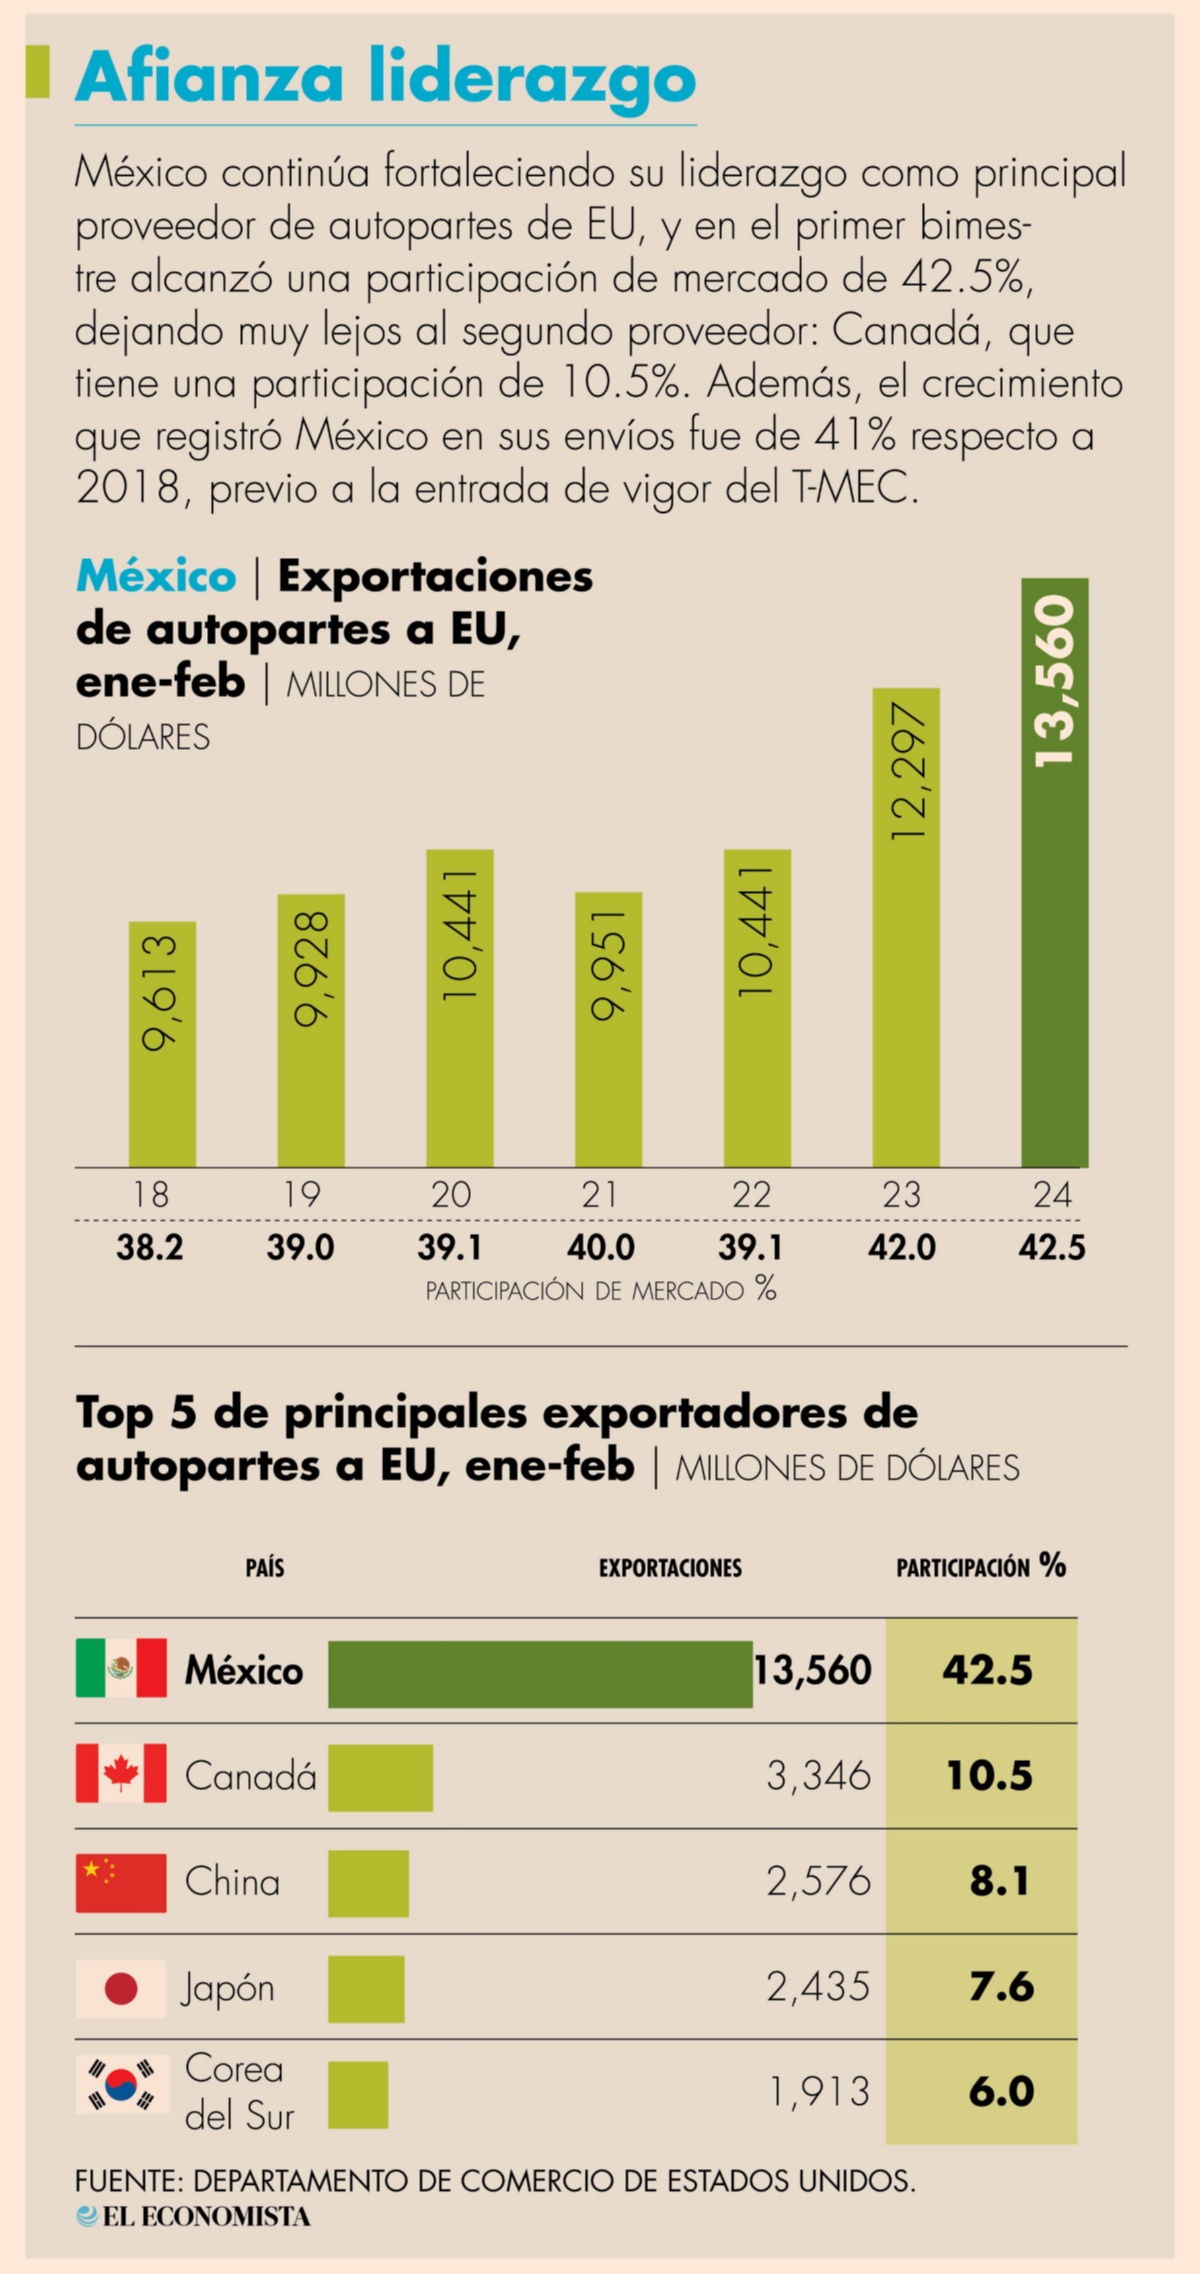 México afianzó su liderazgo en la proveeduría de autopartes hacia EU